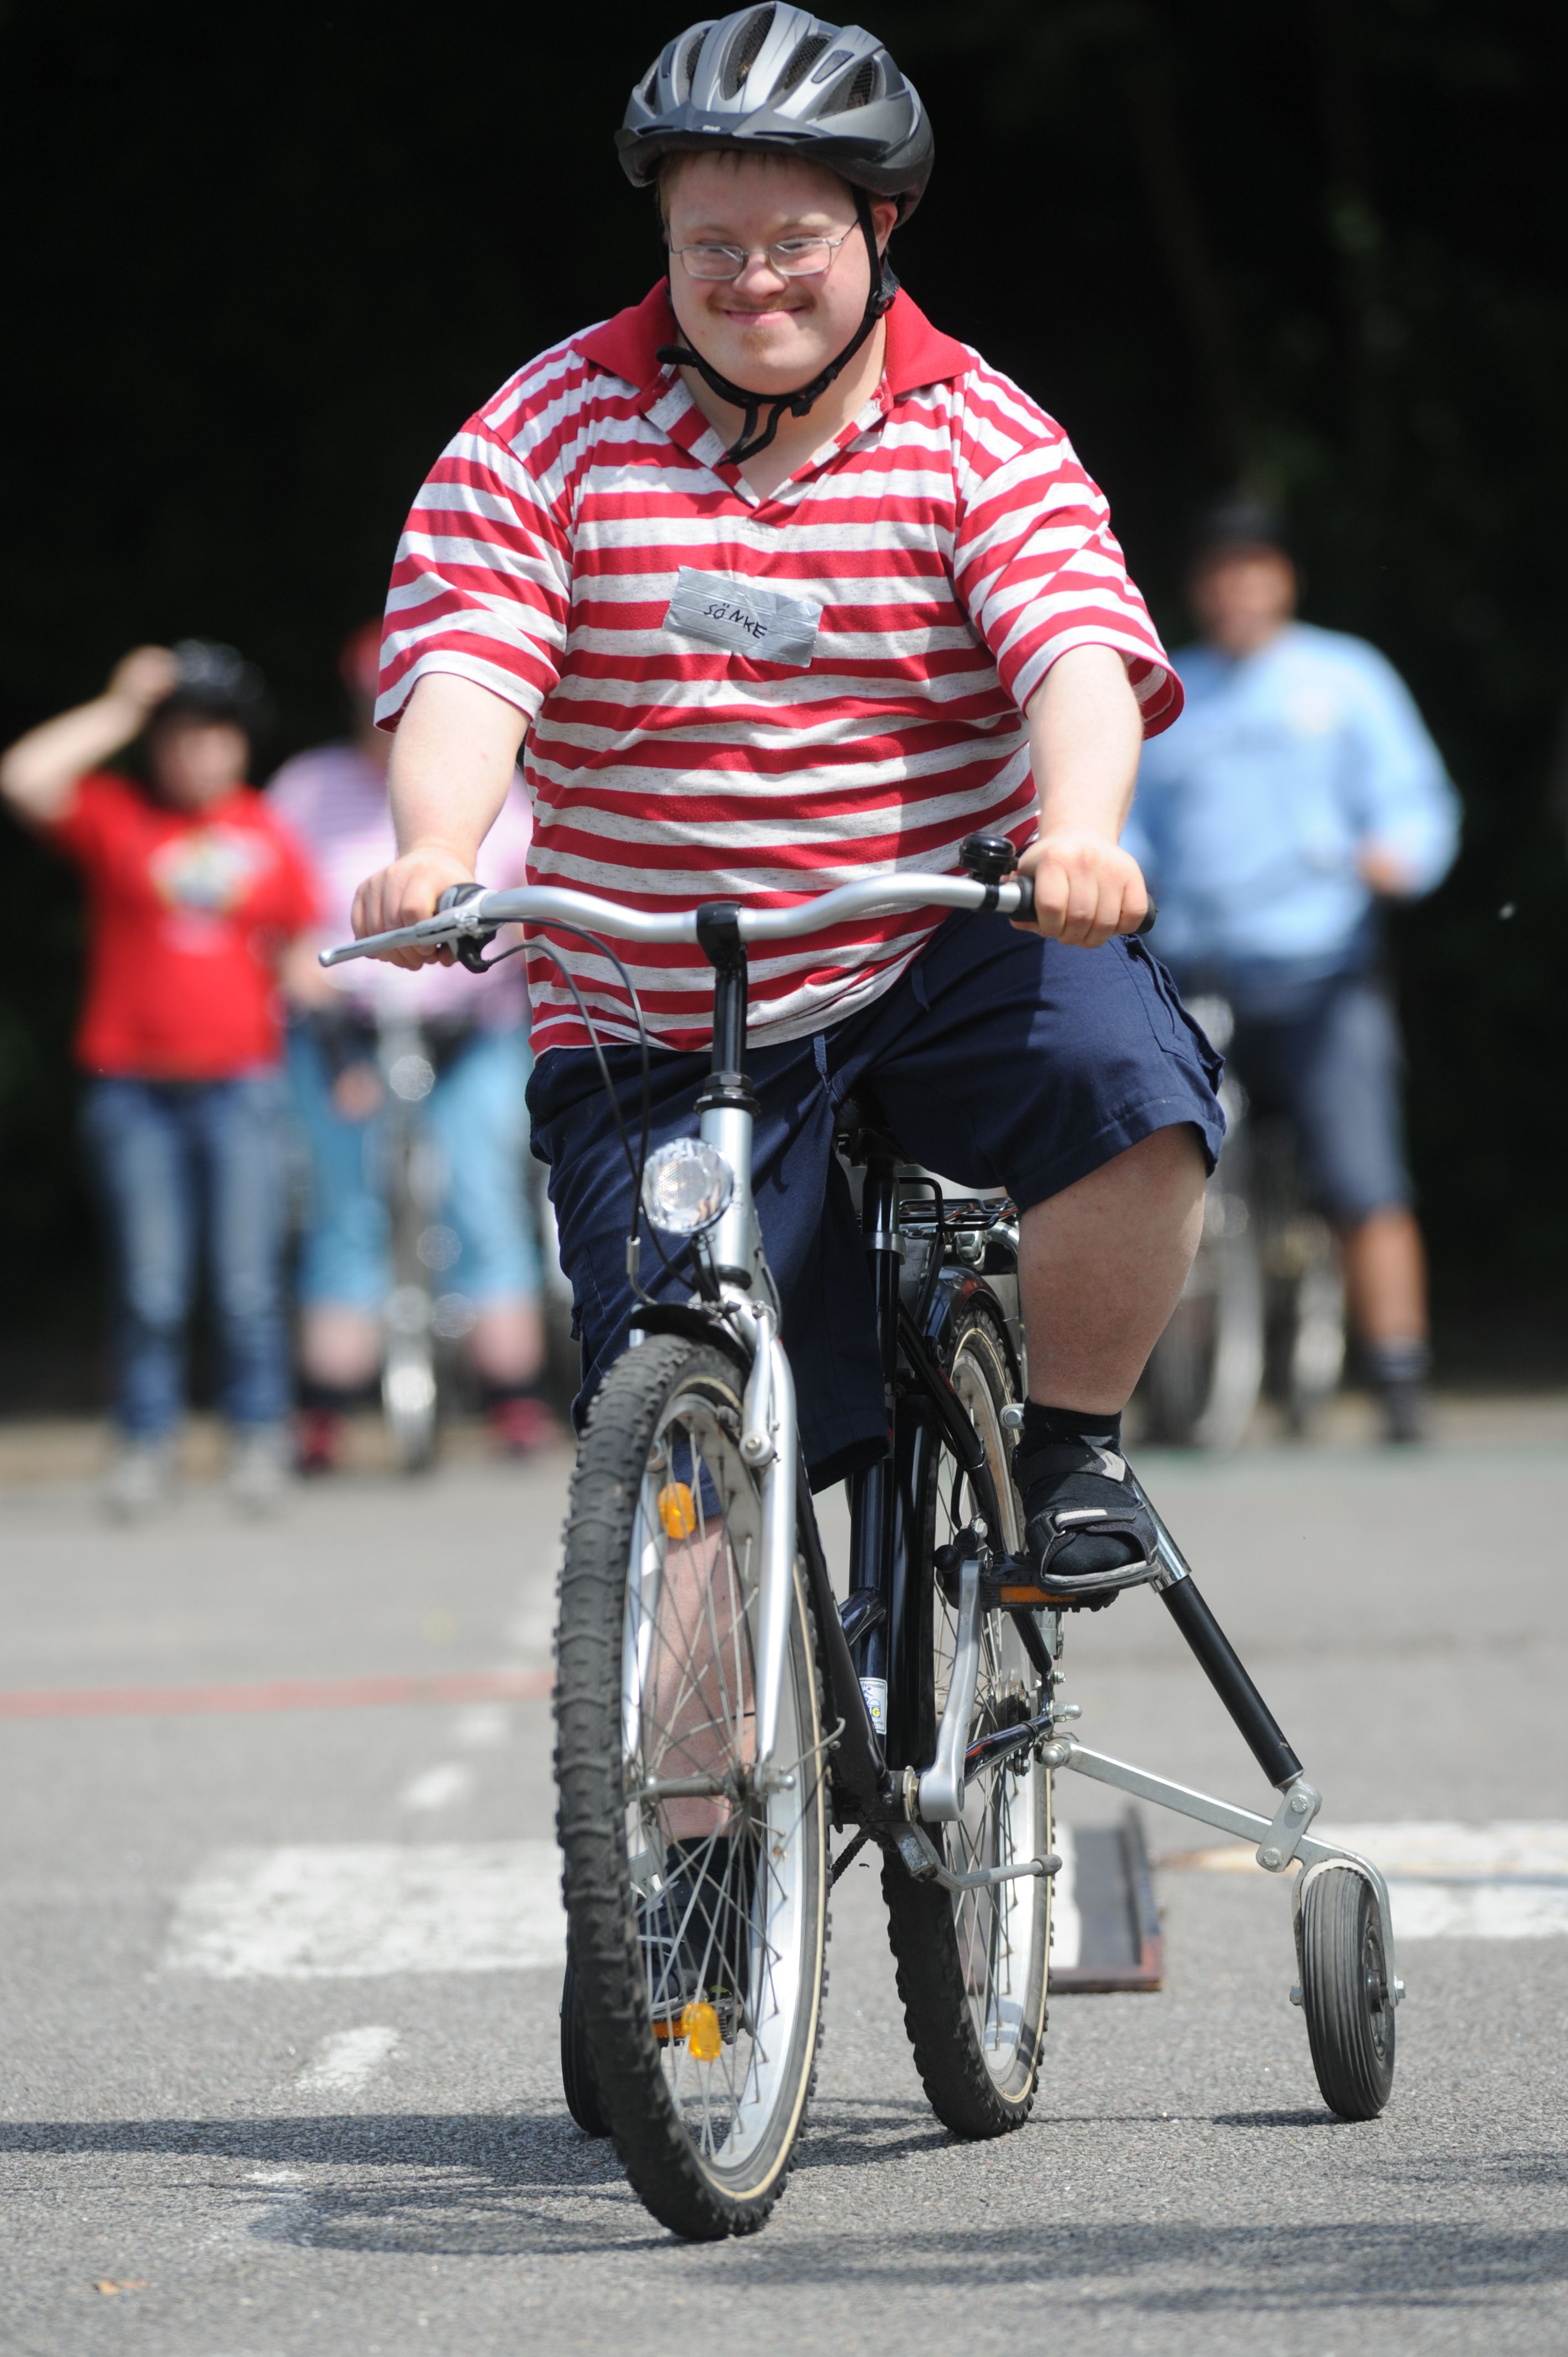 Mensch mit Behinderung fährt auf einem Fahrrad mit Stützrädern.